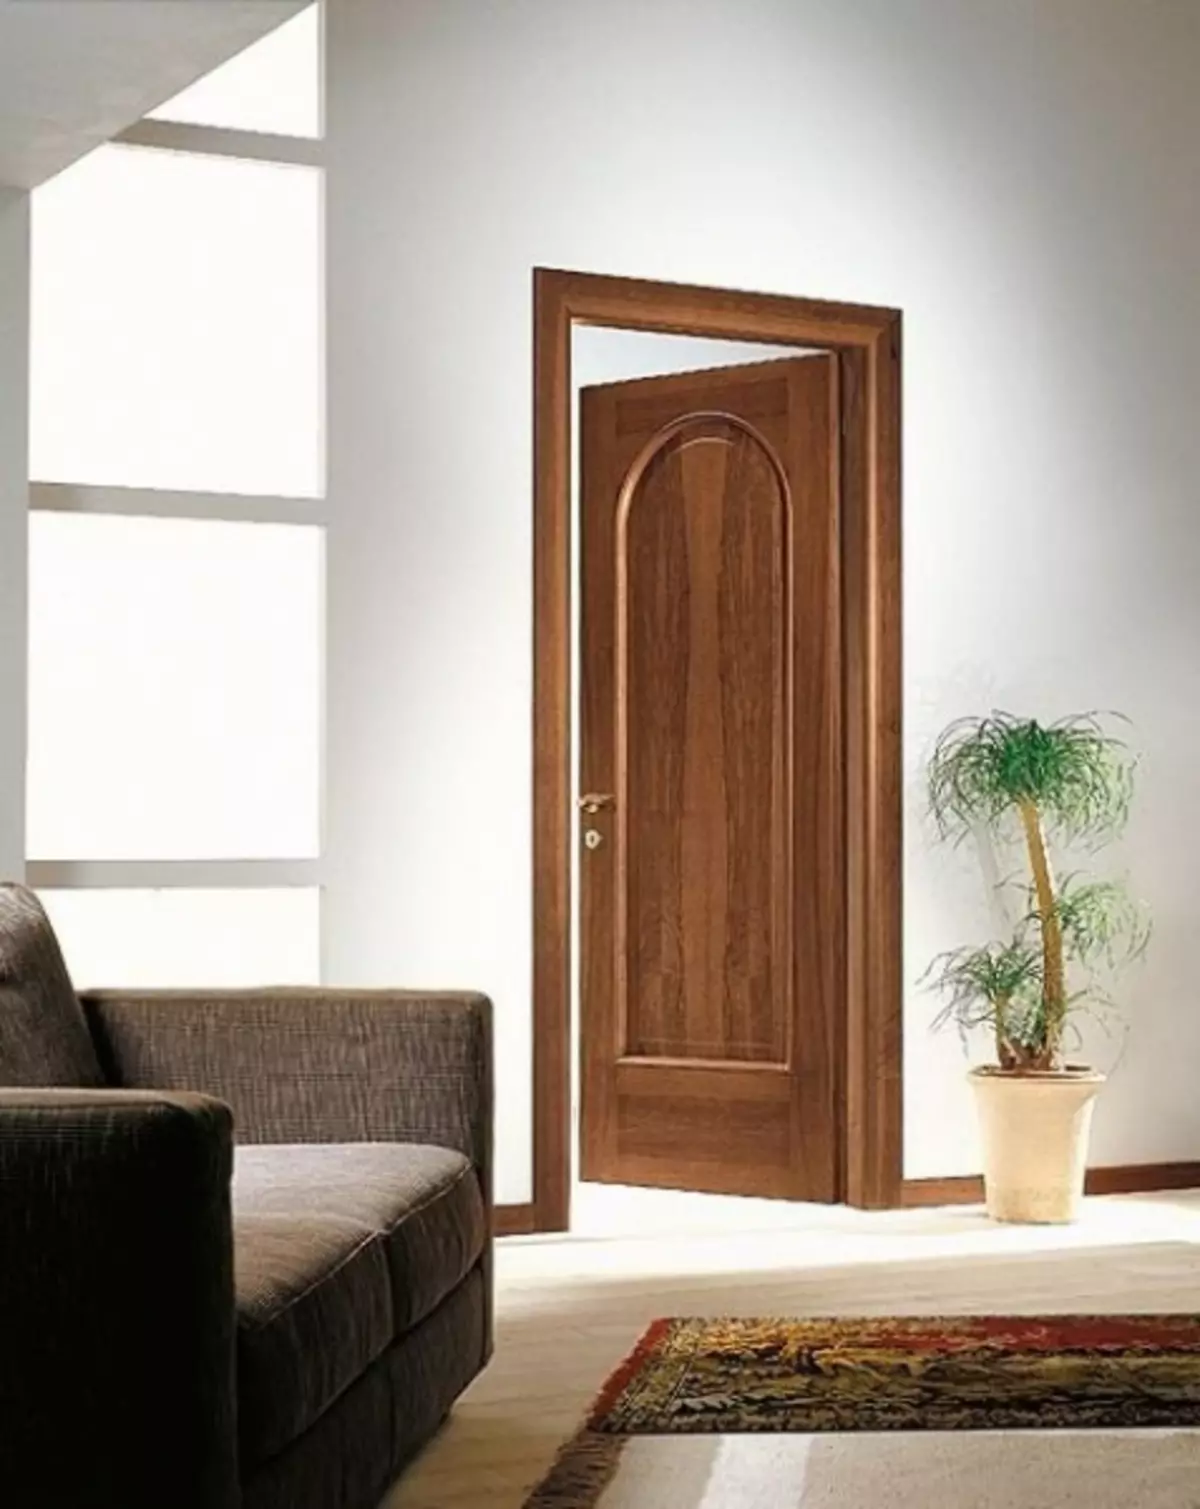 Kolor drzwi włoskiego orzecha włoskiego: zdjęcie we wnętrzu